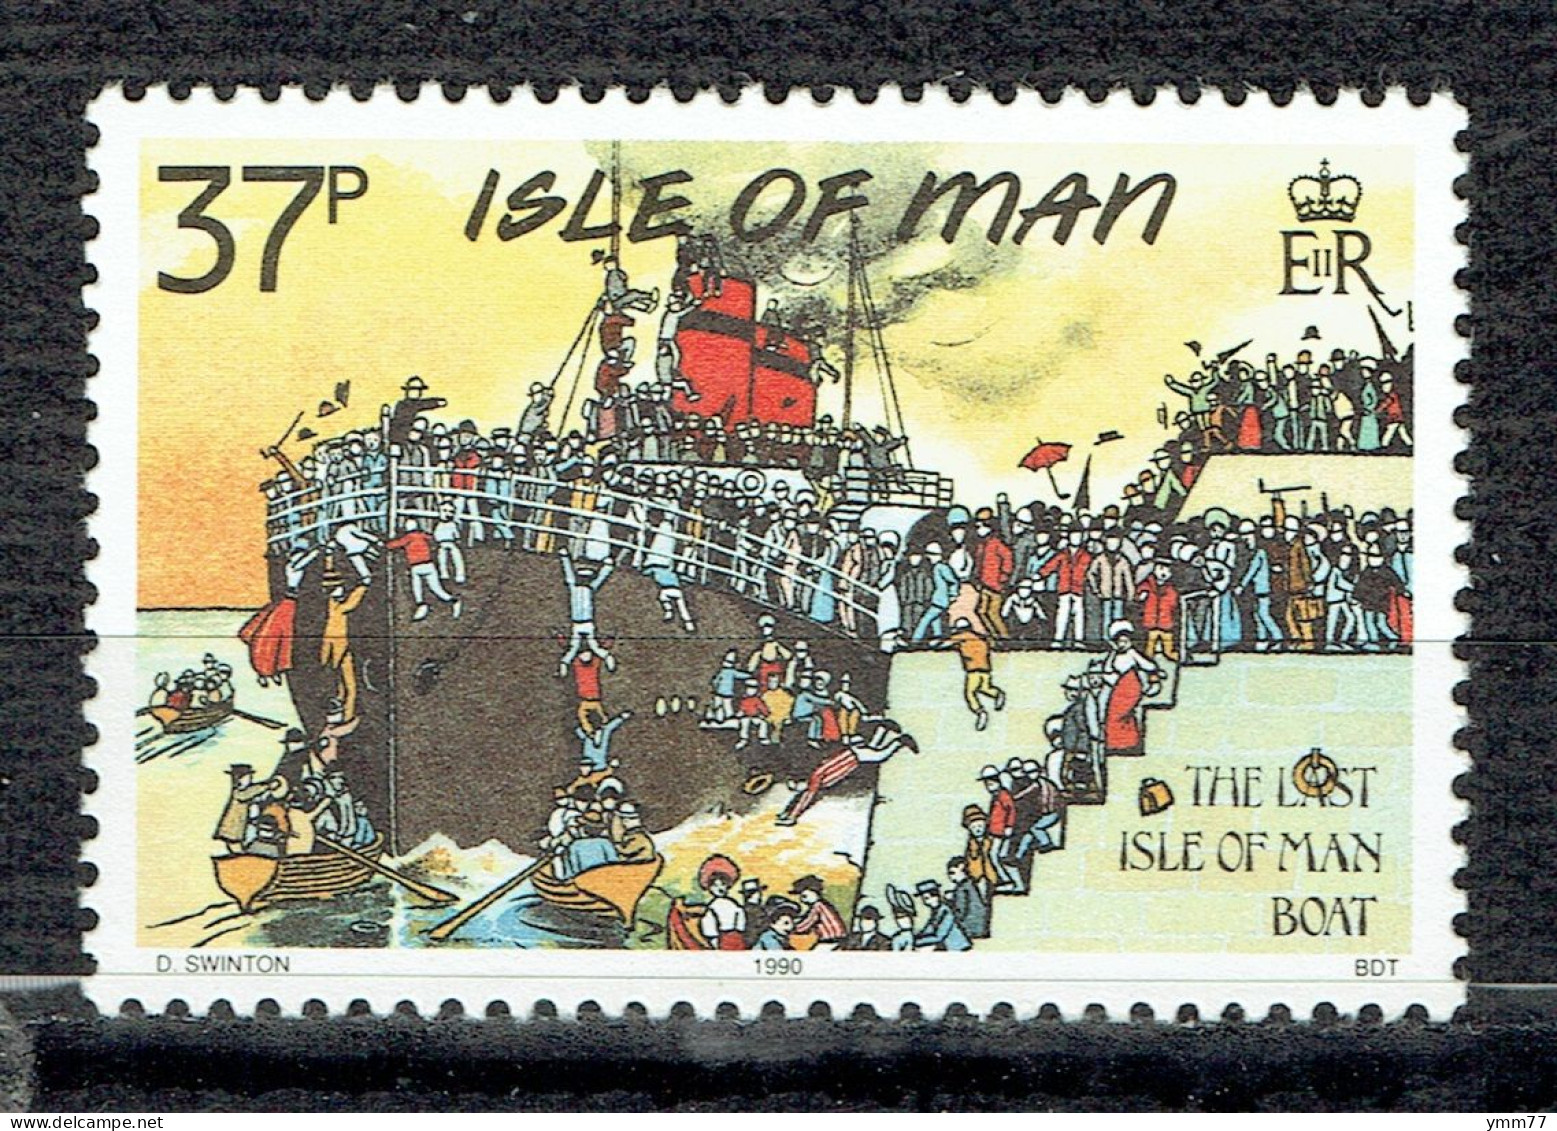 Cartes Postales Mannoises Classiques : "Le Dernier Bateau" - Isle Of Man